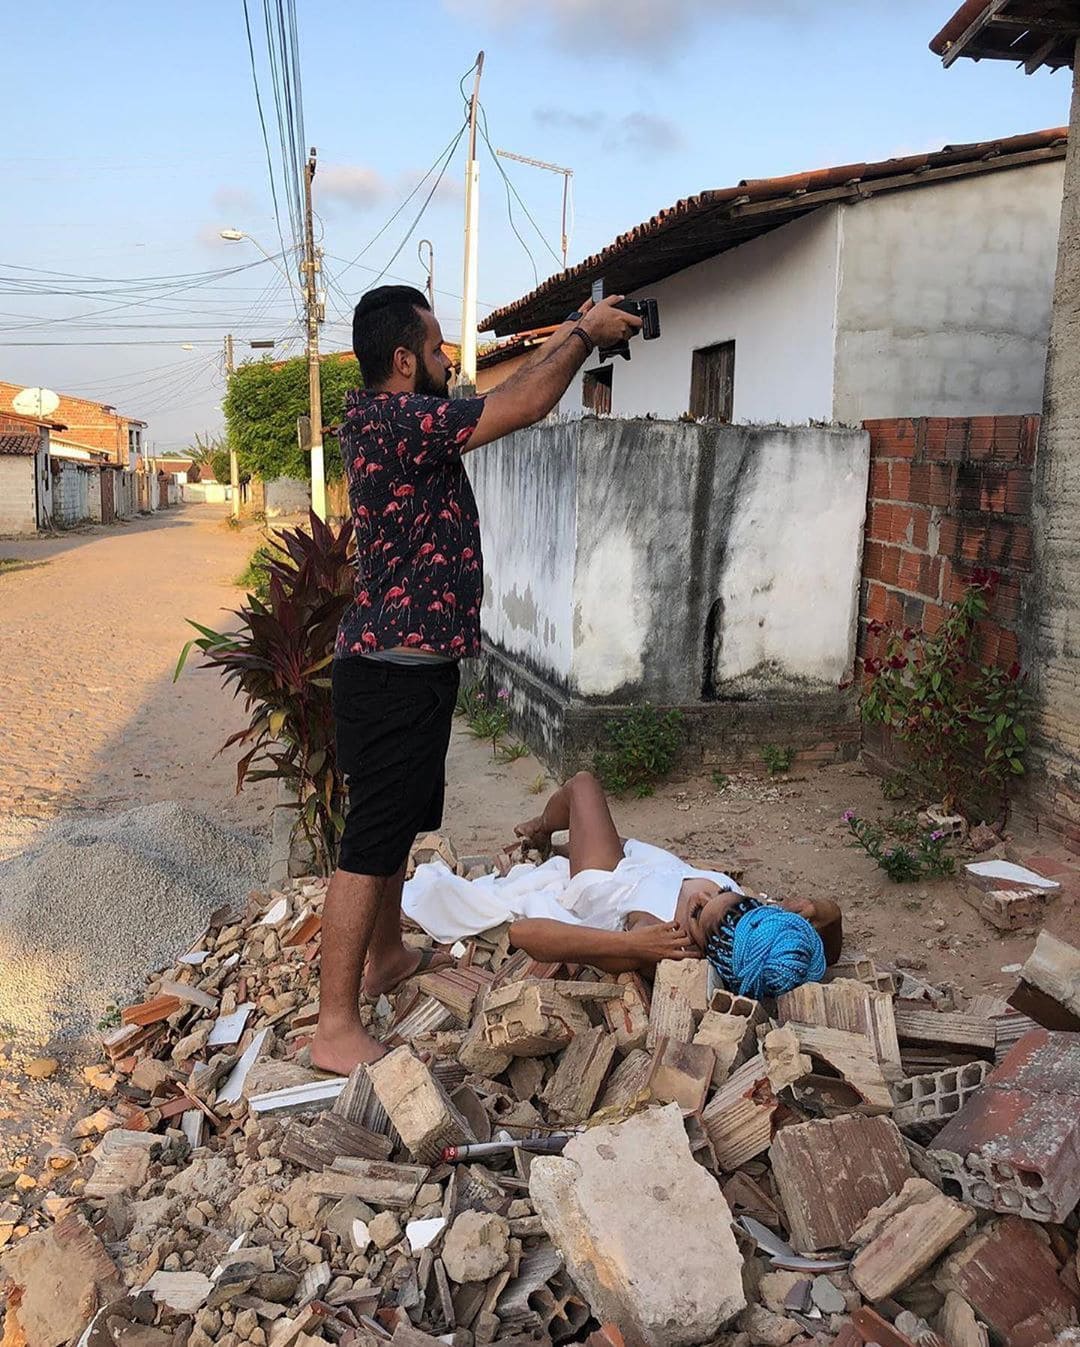 Фотограф из Бразилии делится закадровыми снимками, показывая, как выглядят идеальные фото в реальной жизни. ФОТО